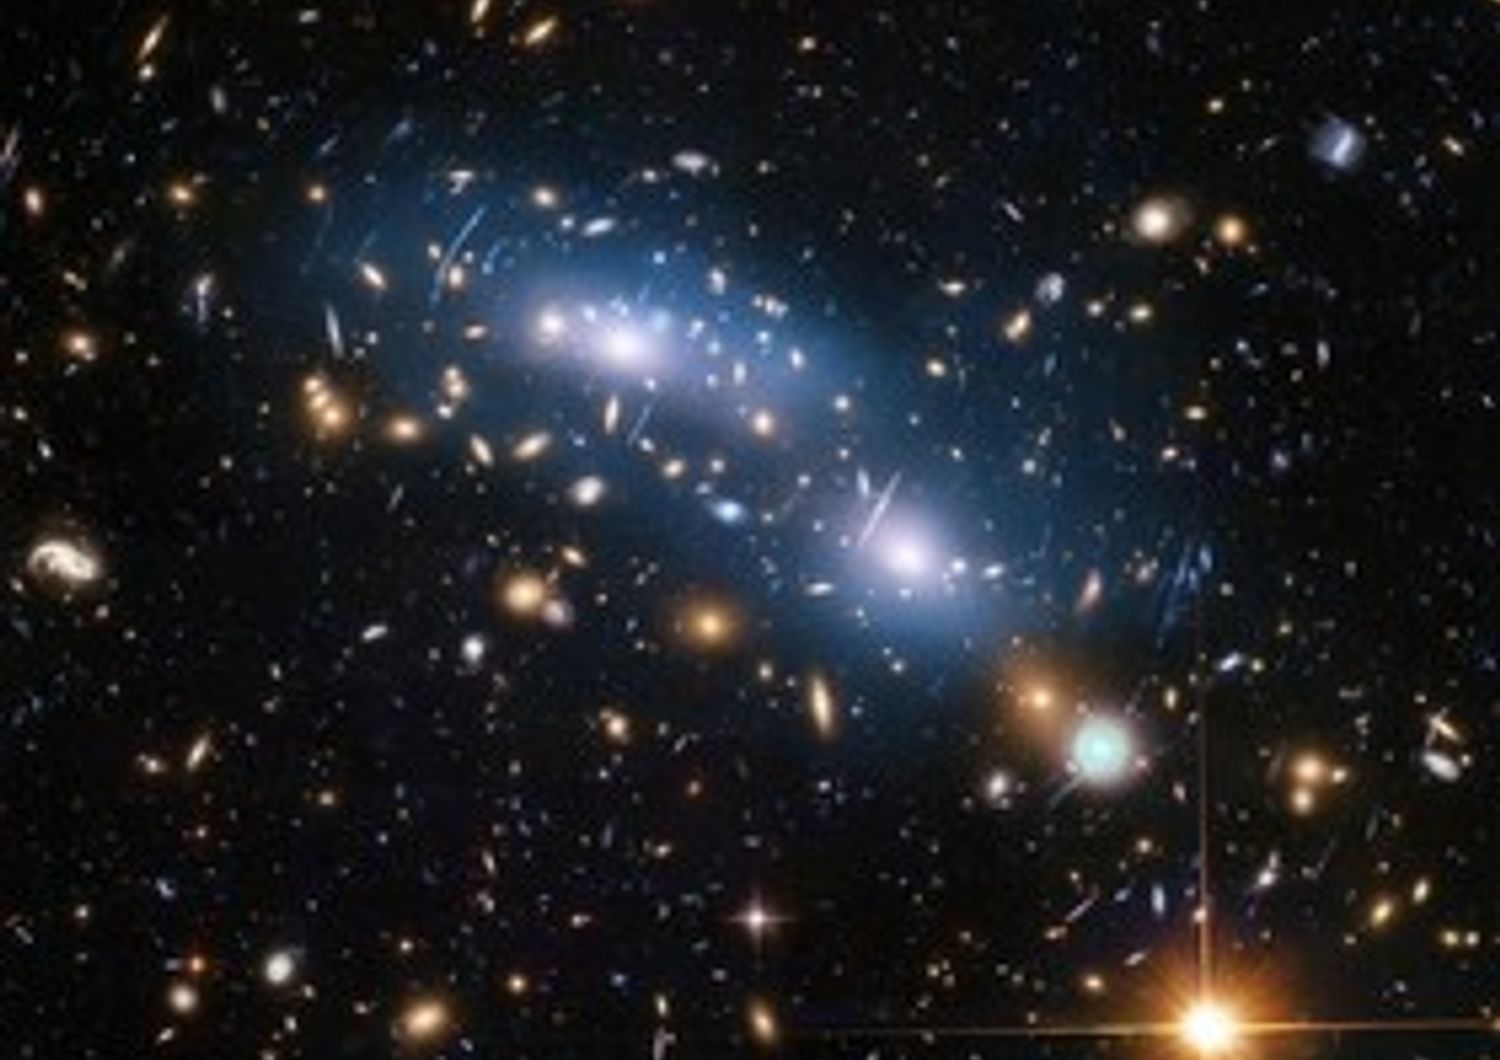 Immagine ripresa da Hubble dell'ammasso di galassie MACS J0416, uno dei sei studiati dal supertelescopio